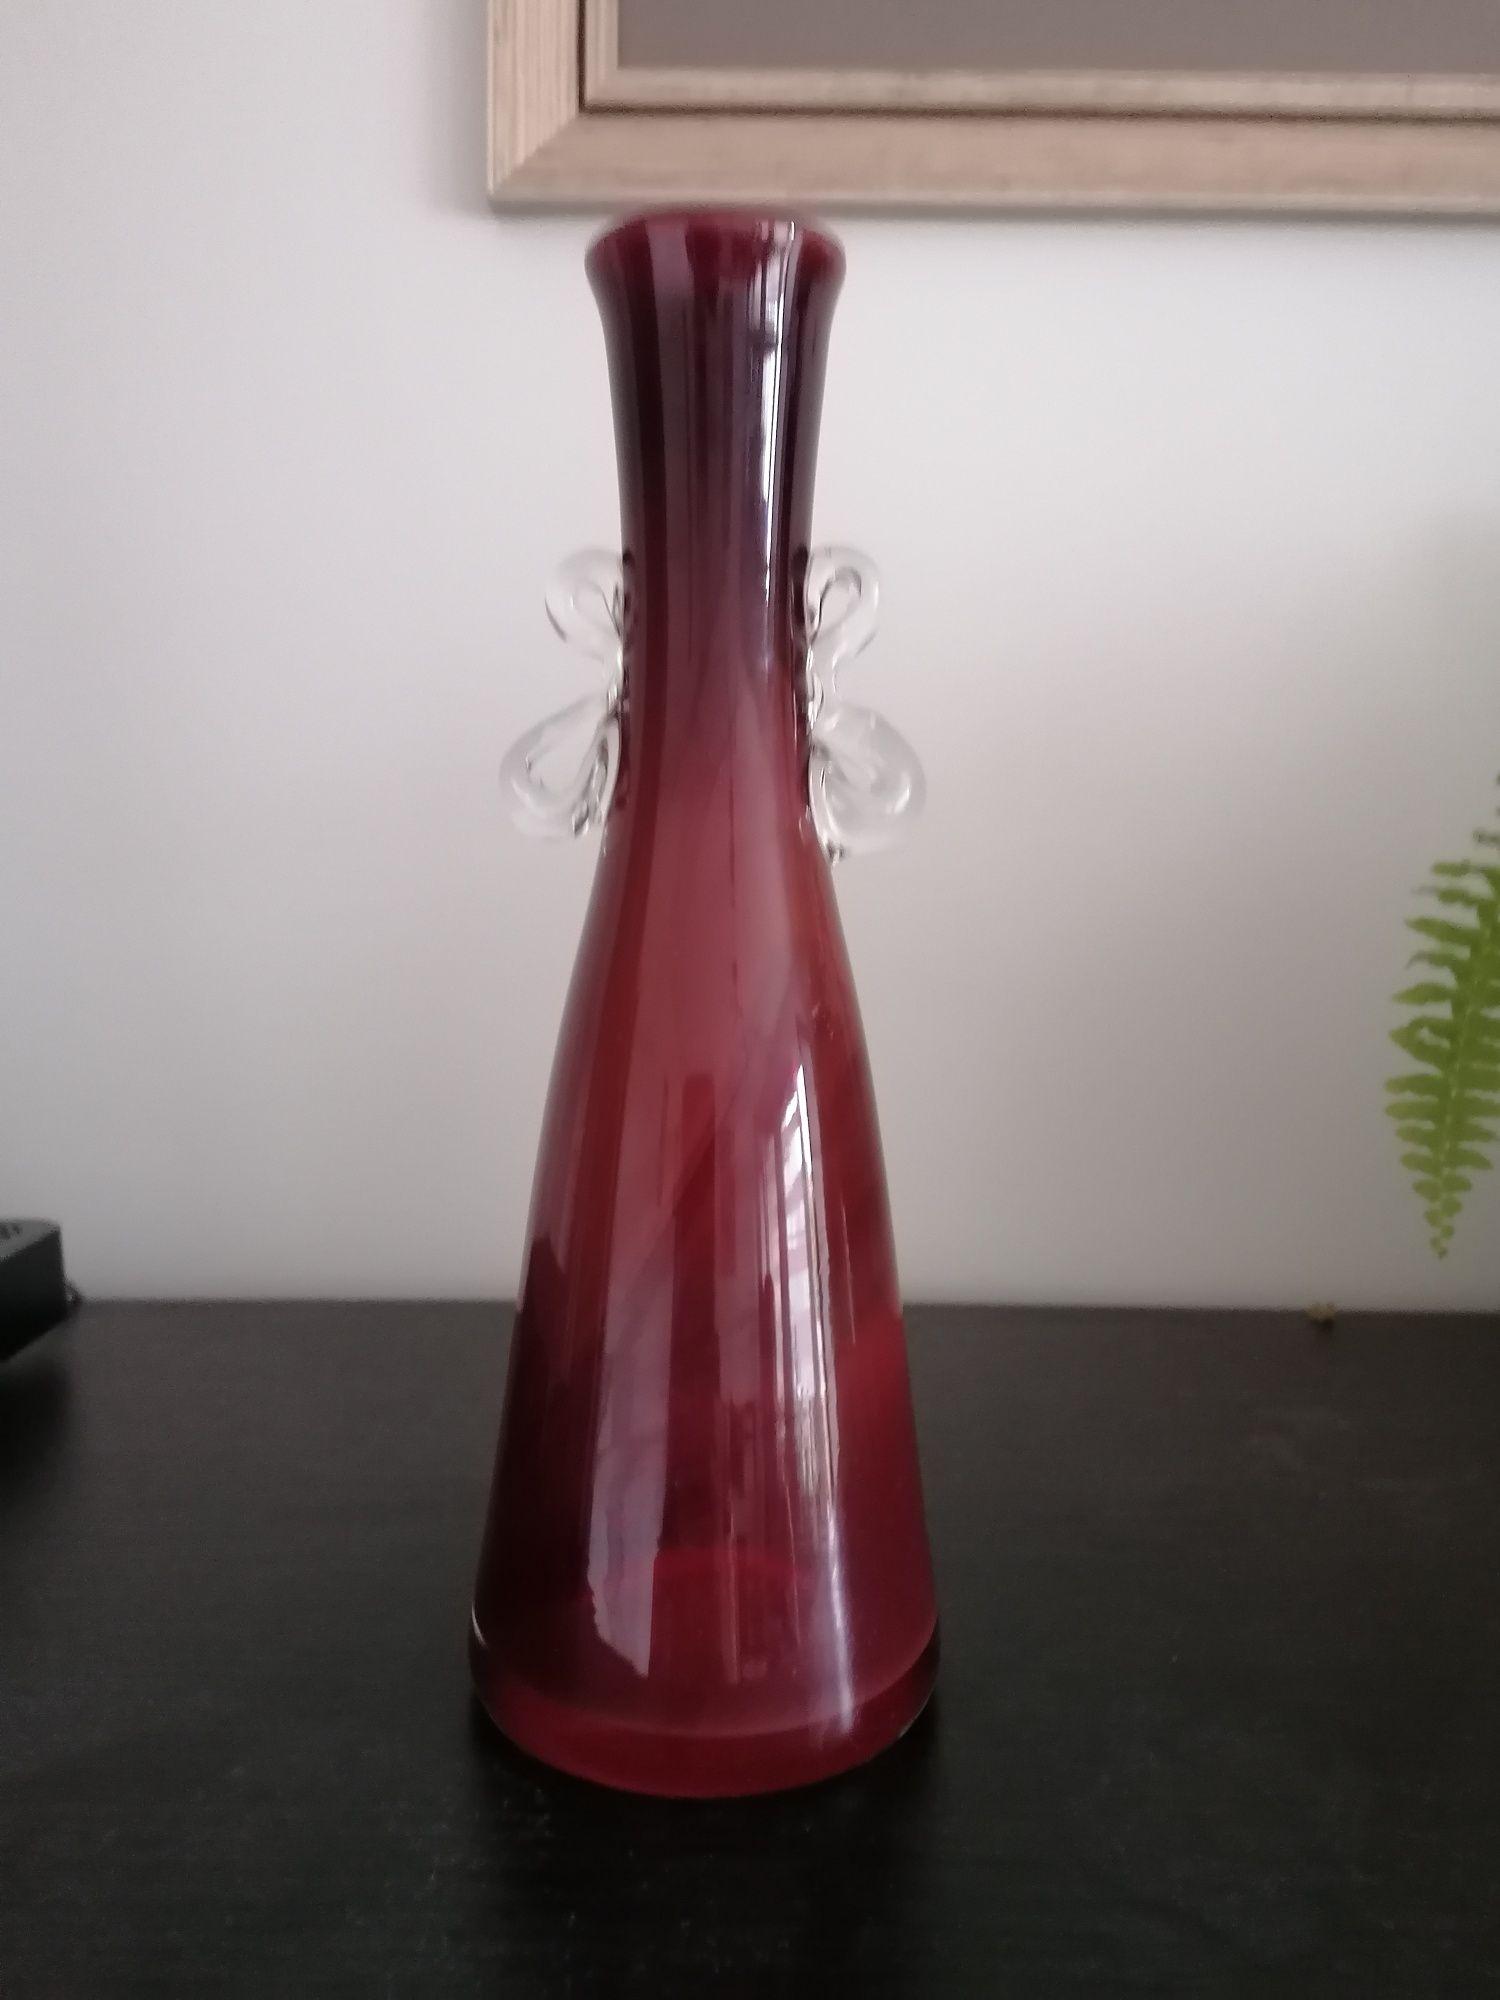 Piękny wazon bordo cieniowany z lat 70 tych